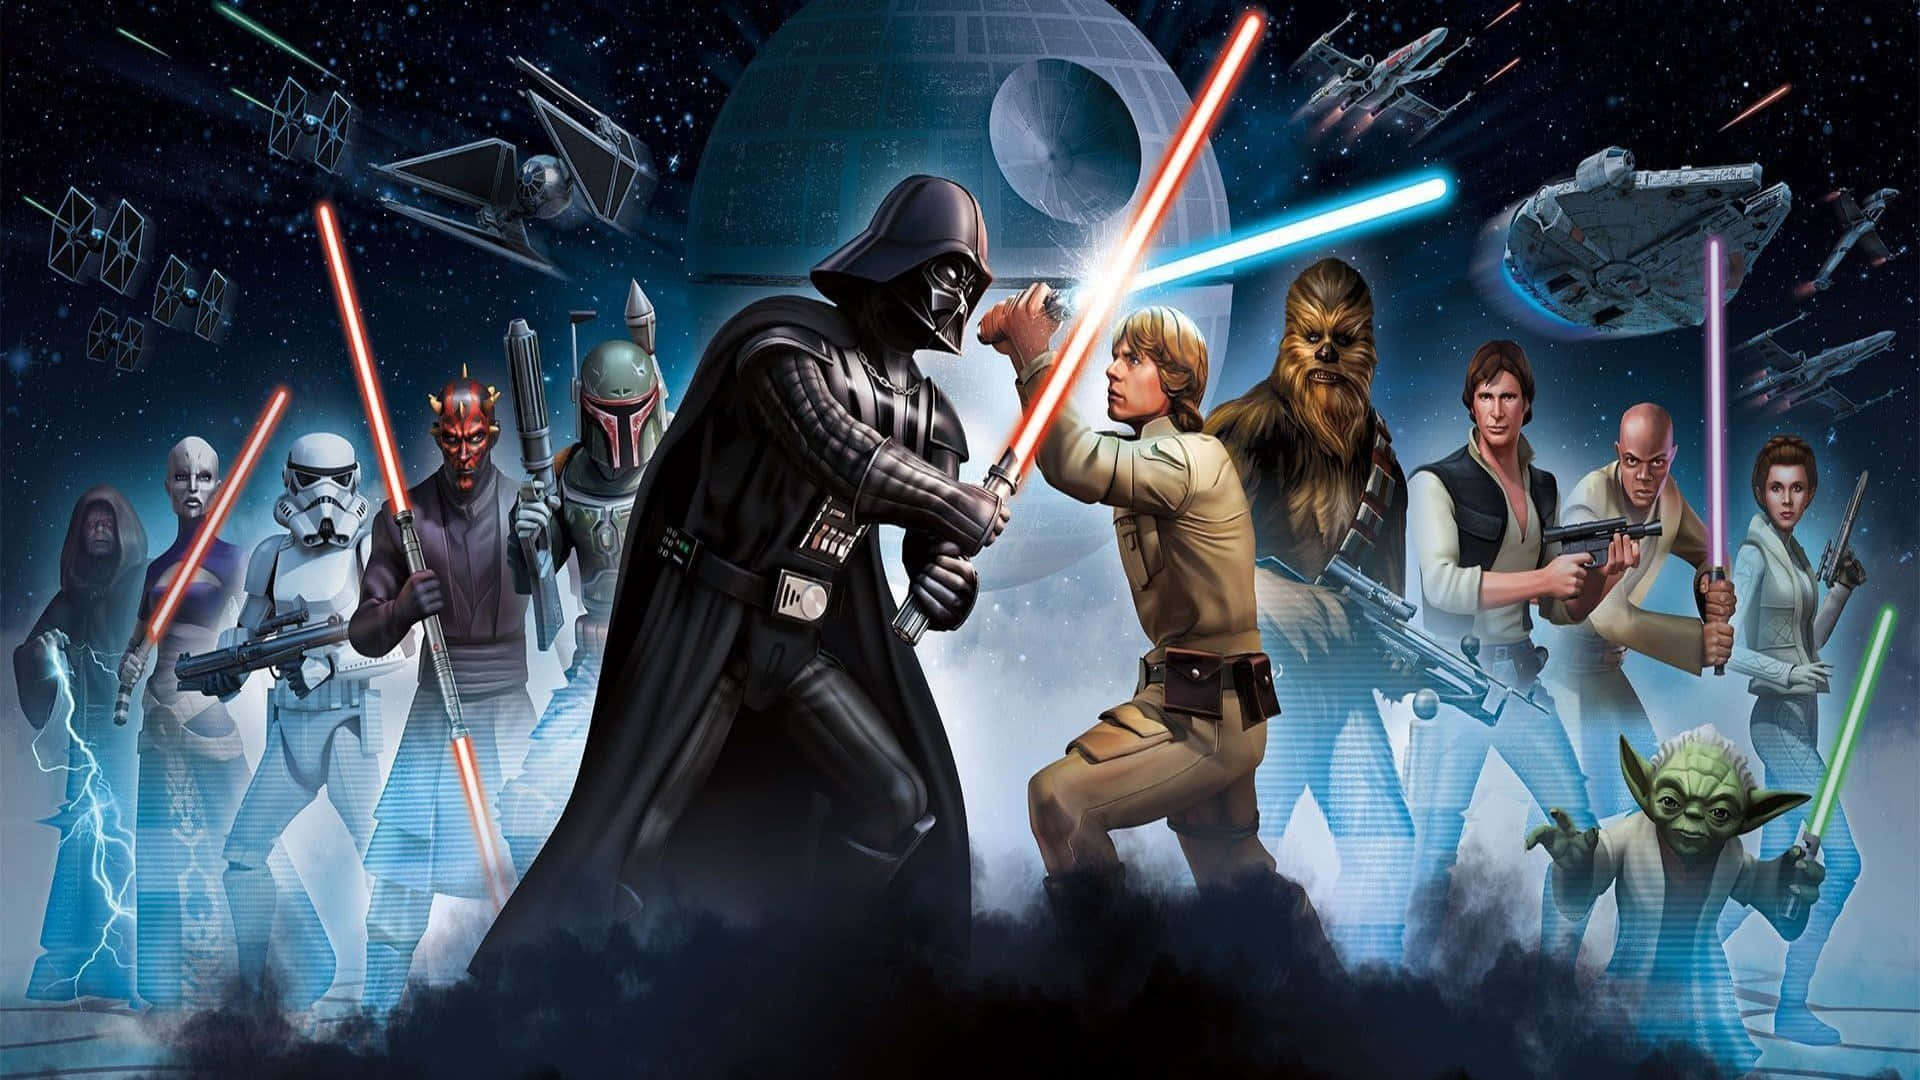 Star Wars Luke Skywalker Vs Darth Vader Picture